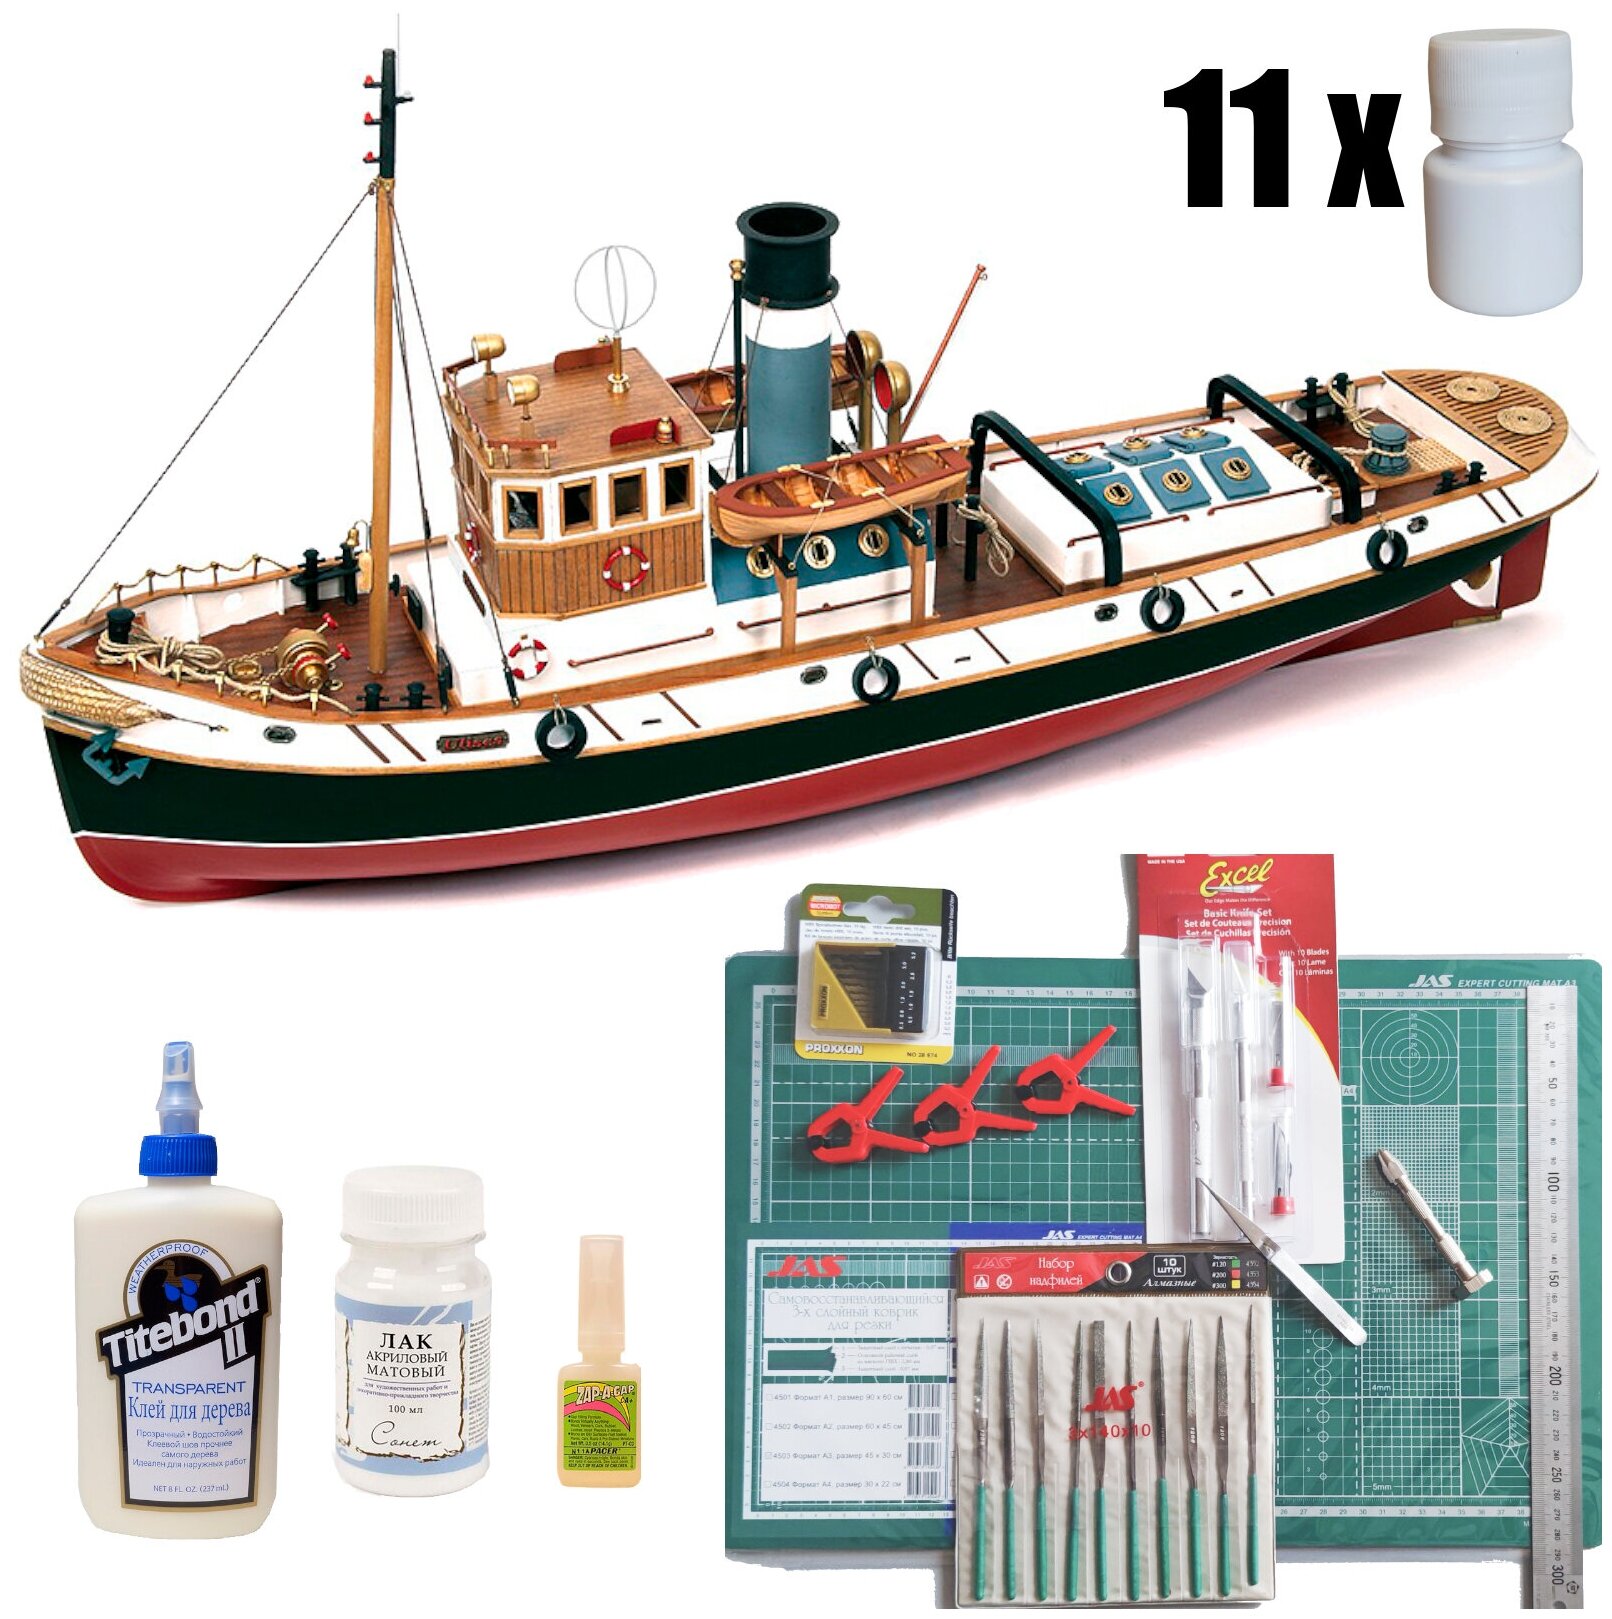 Ulises (ходовая модель для воды), модель корабля OcCre (Испания), М.1:30, подарочный набор для сборки + инструменты + краски, лак и клей